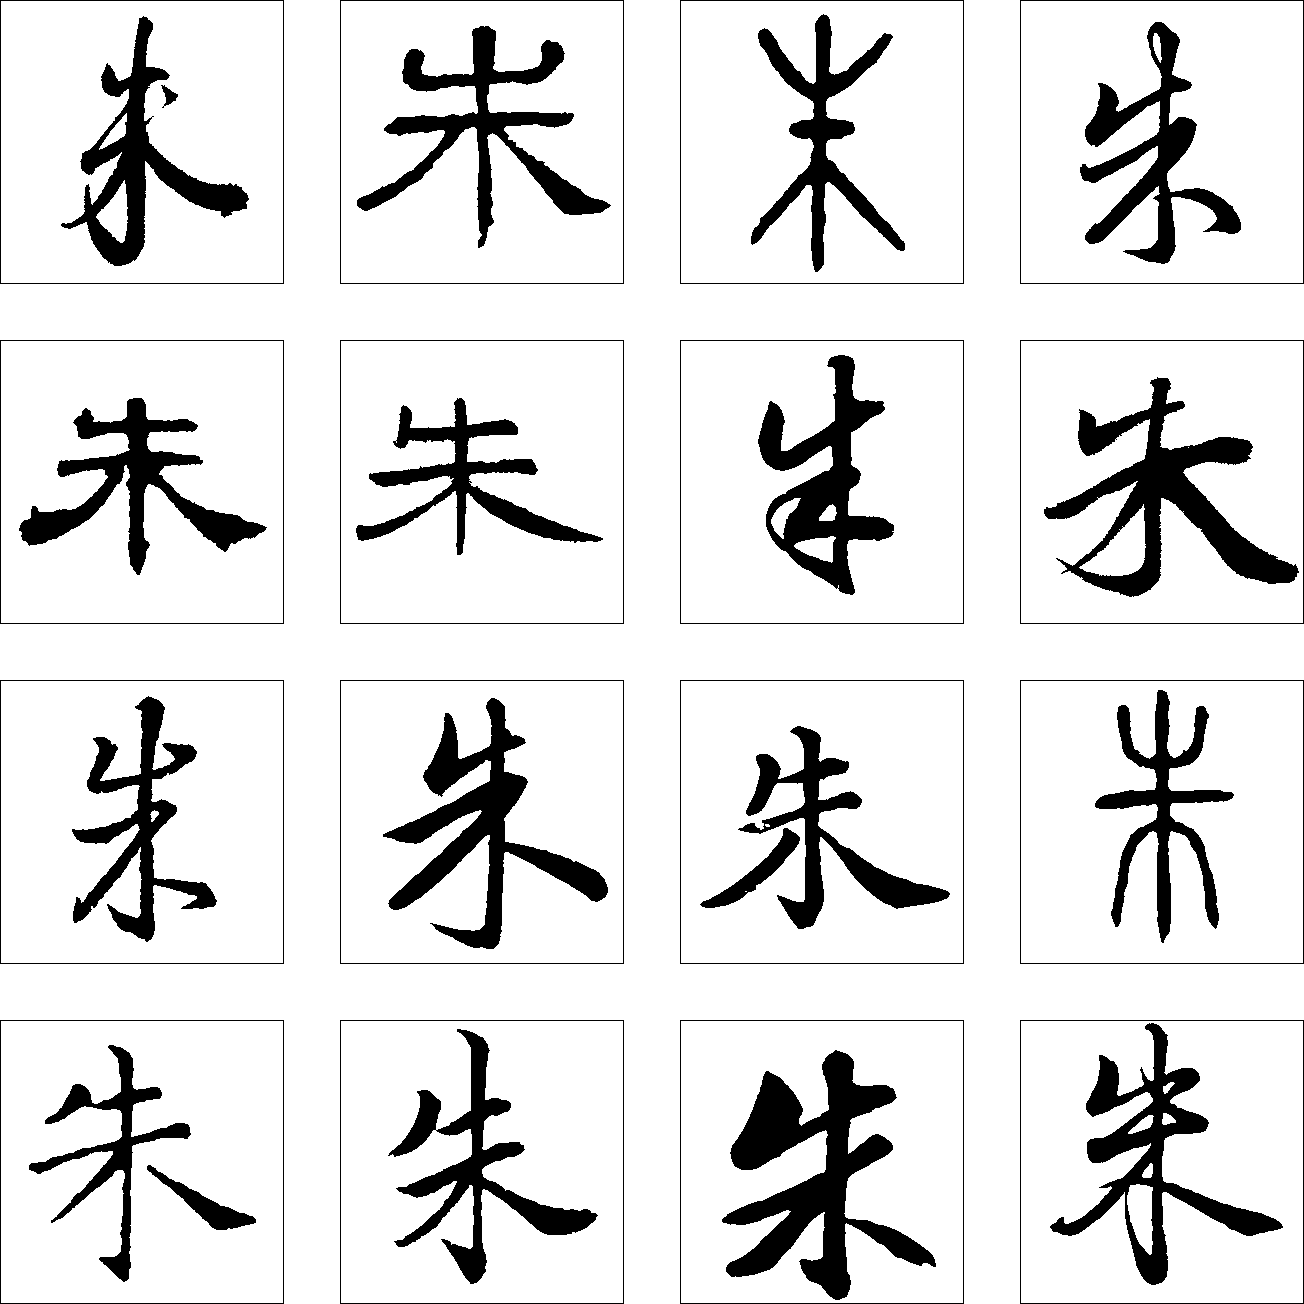 国_书法字体_字体设计作品-中国字体设计网_ziti.cndesign.com